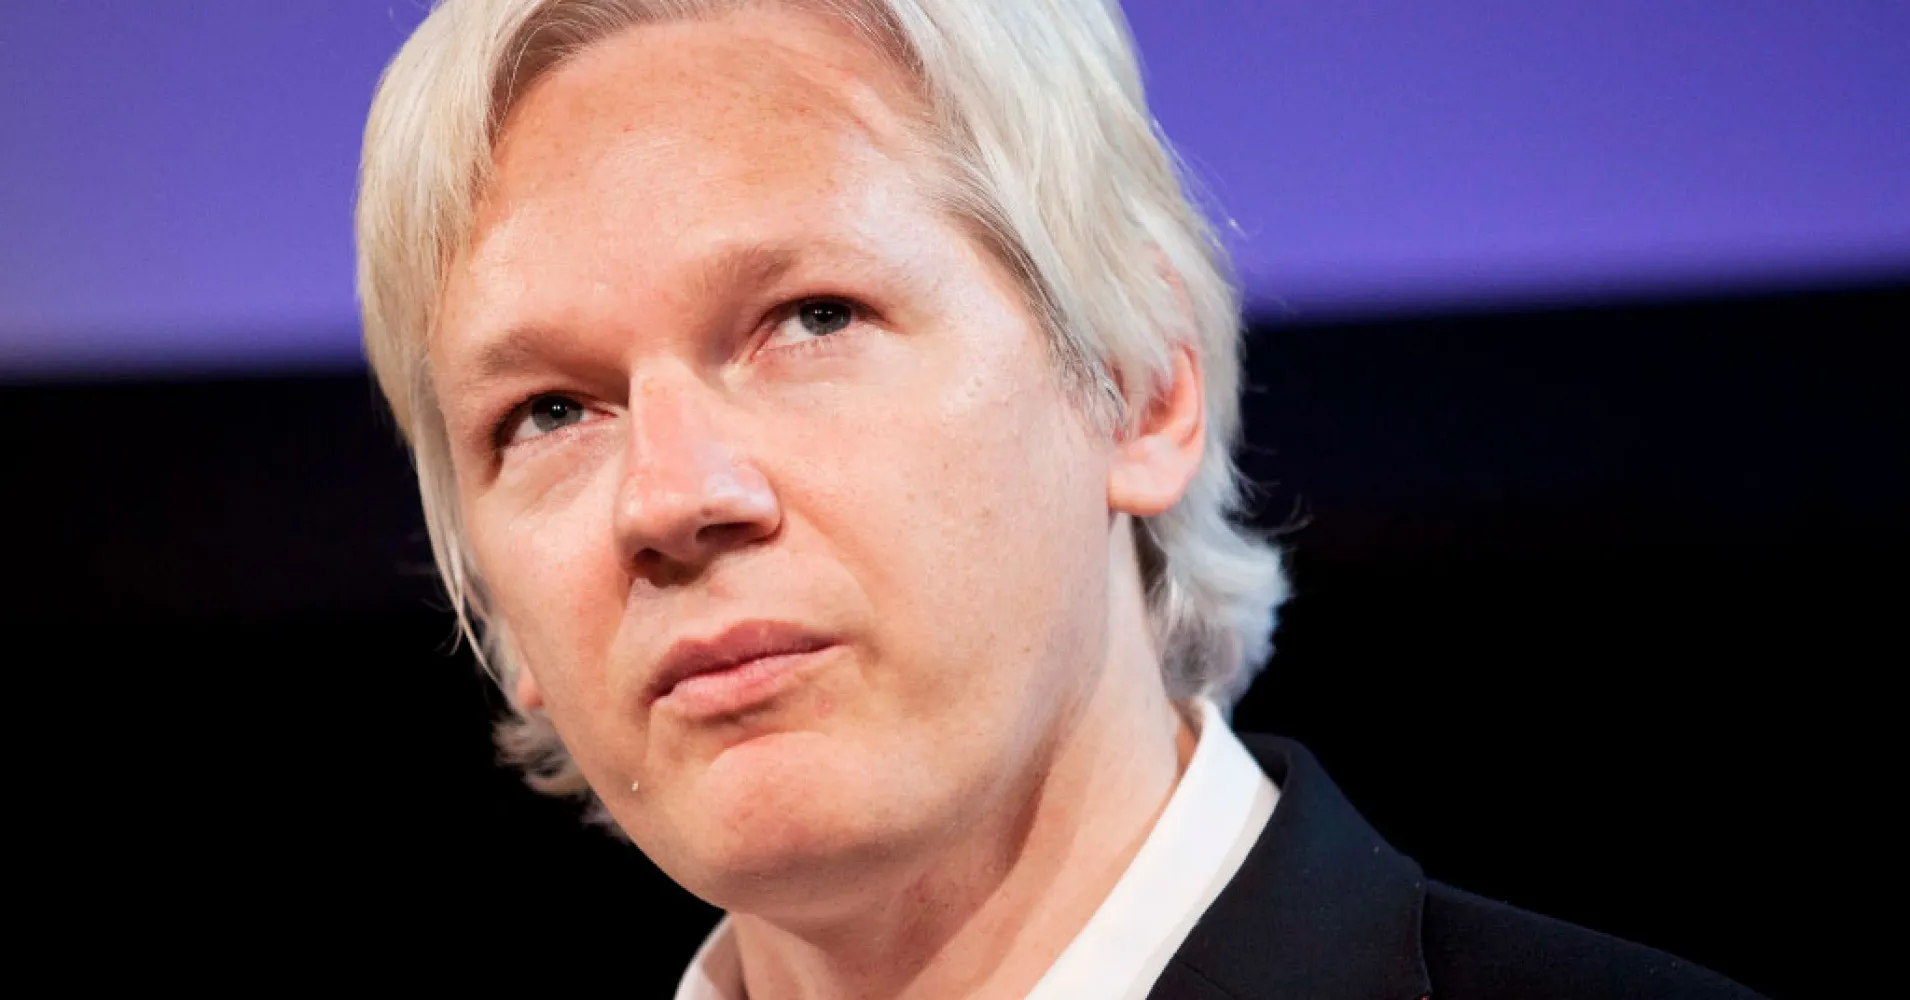 Викиликс что это. Джулиан Ассанж. Ассанж Джулиан Ассанж. Джулиан Ассанж Wikileaks. Джулиан Ассанж фото.